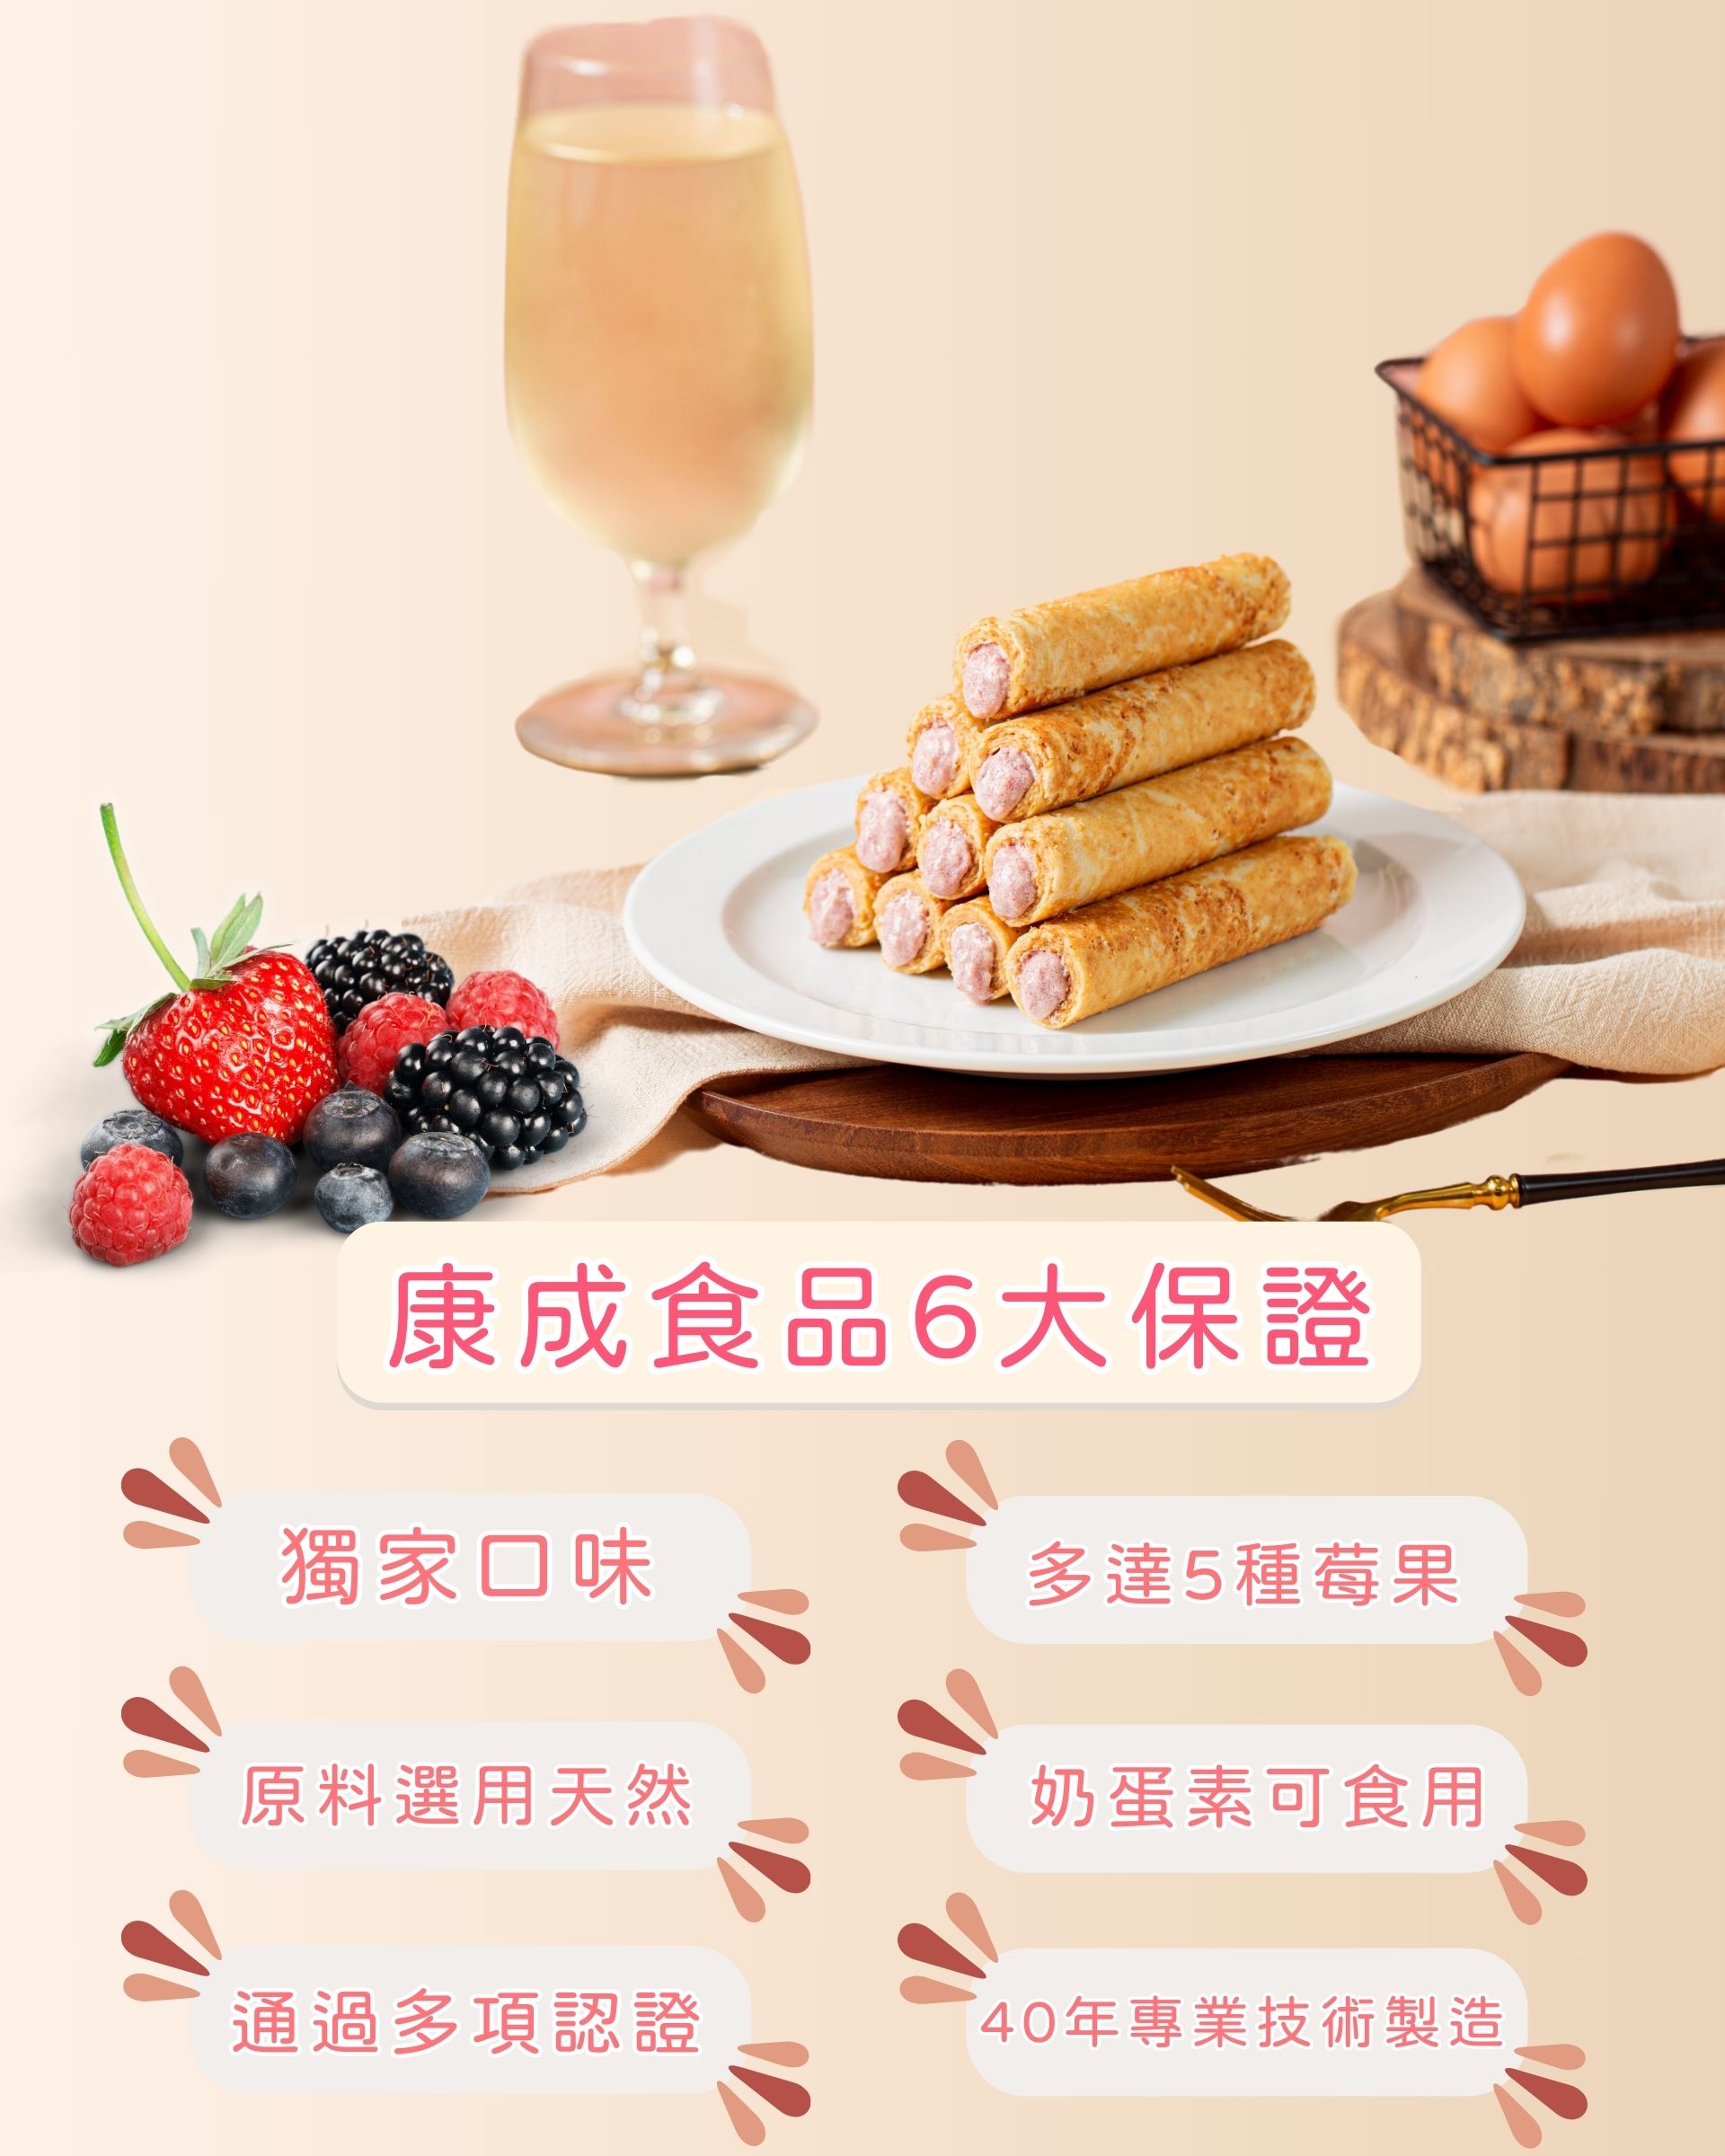 【康成食品】捲捲莓果禮盒(12支/盒) 綜合5種莓果內餡 低糖爆餡 成分單純